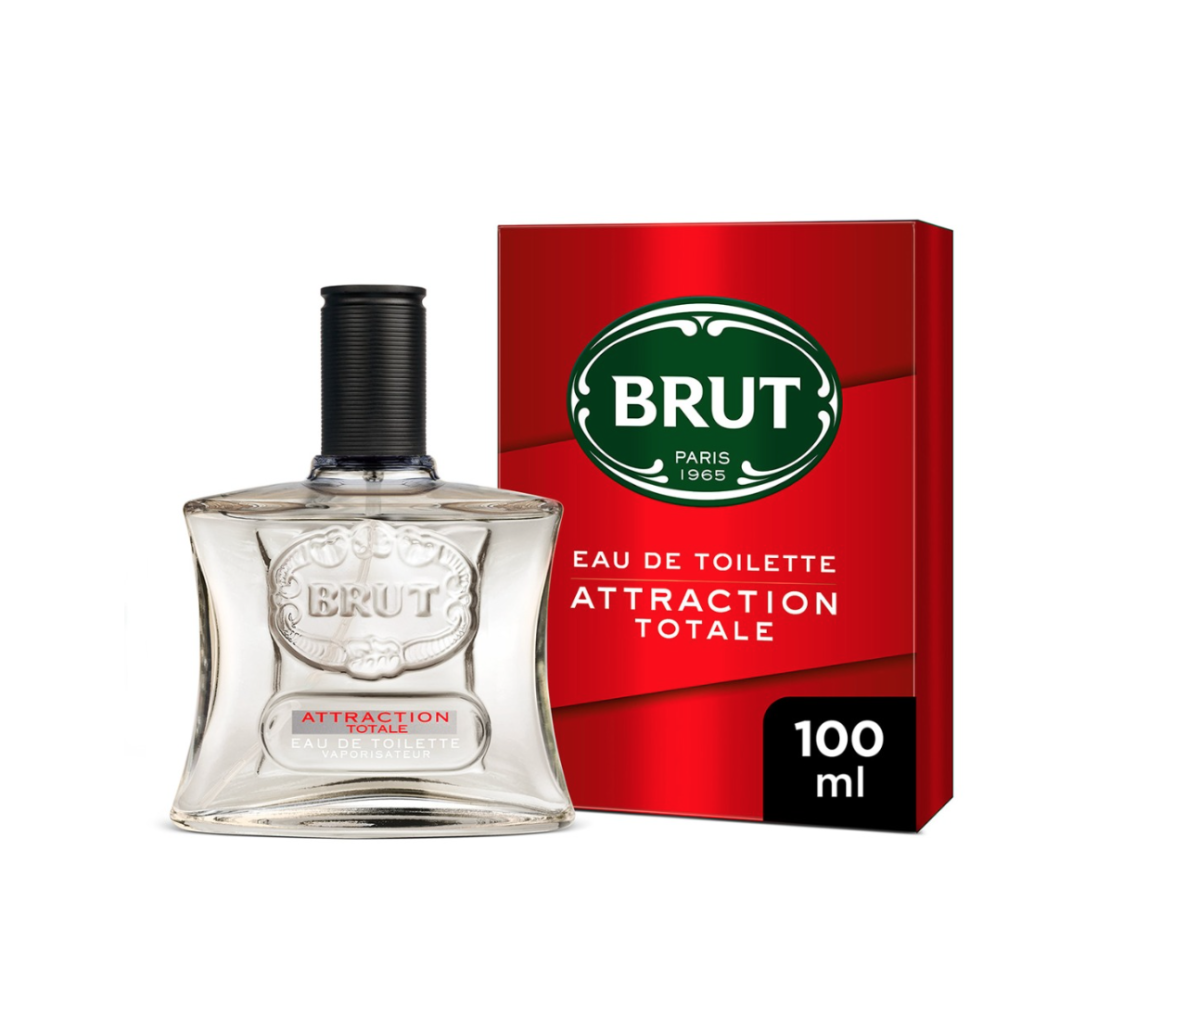 Klasik erkeğin efsanevi parfümü Brut